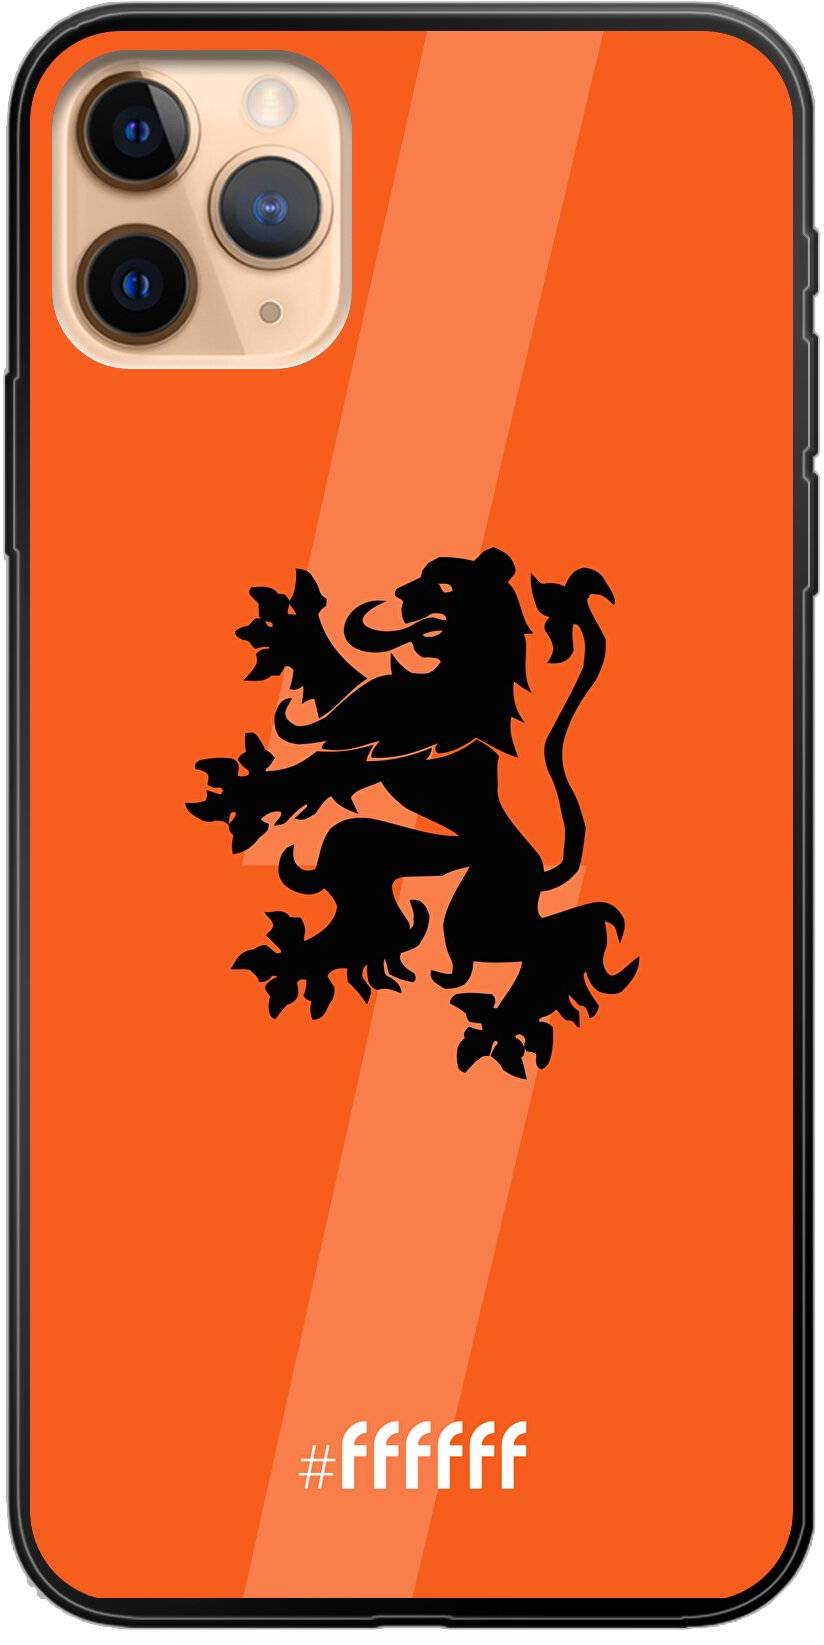 Nederlands Elftal iPhone 11 Pro Max